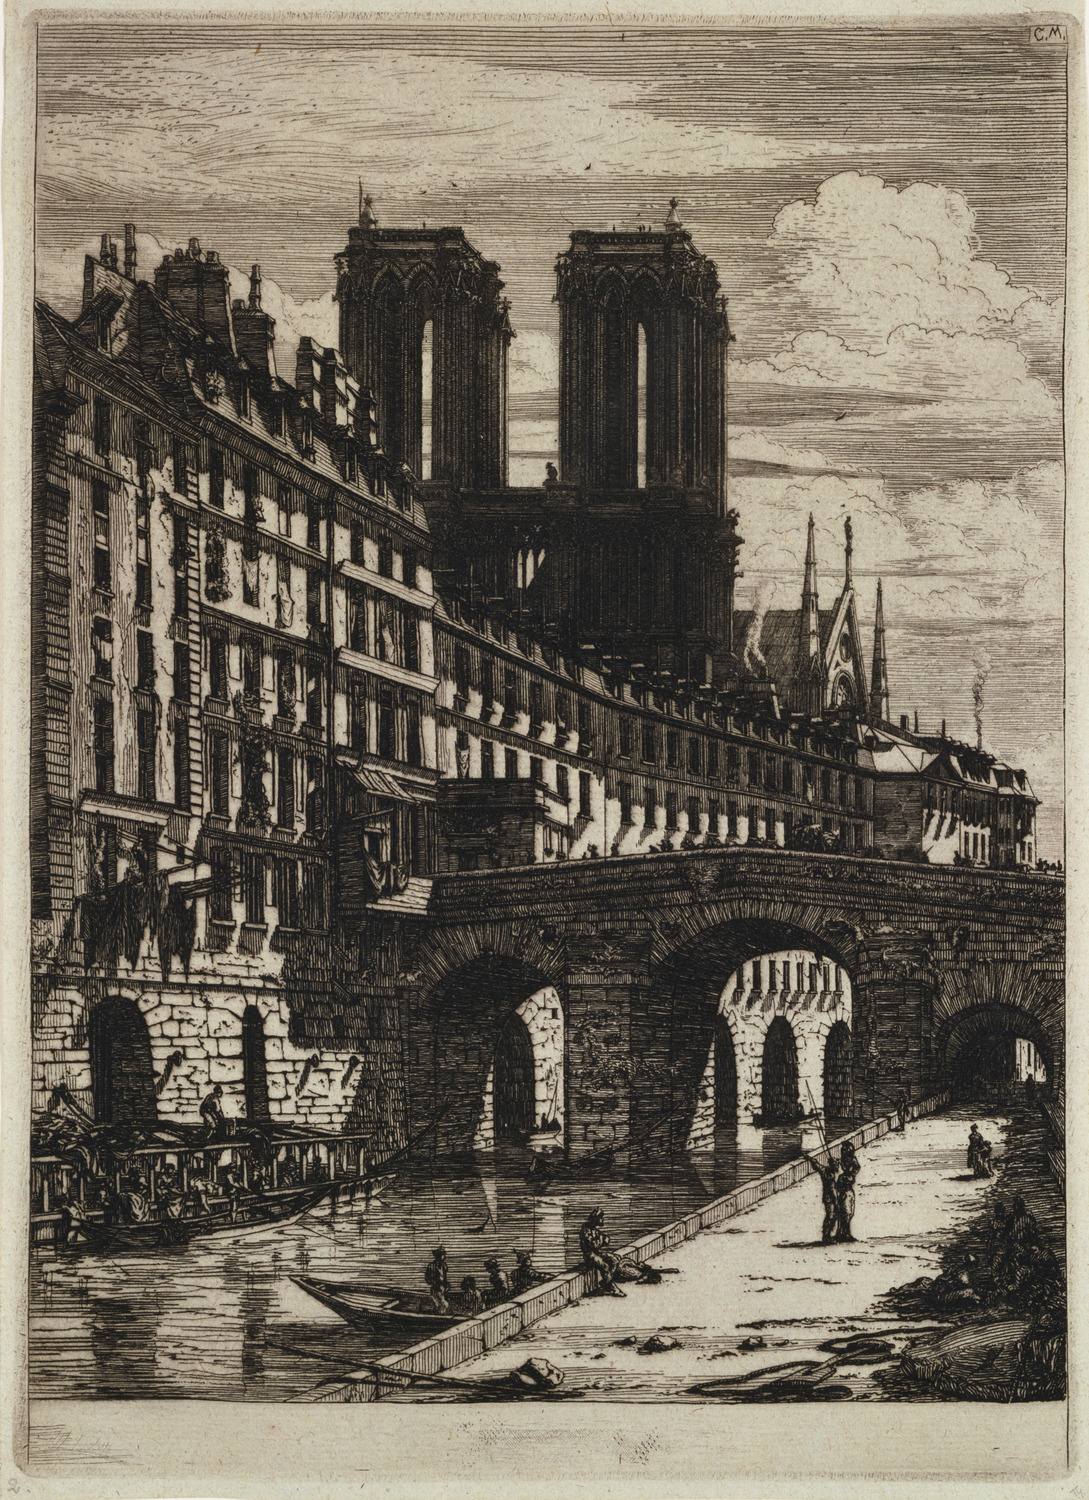 パリの銅版画』：ル・プティ・ポン|シャルル・メリヨン |所蔵作品検索